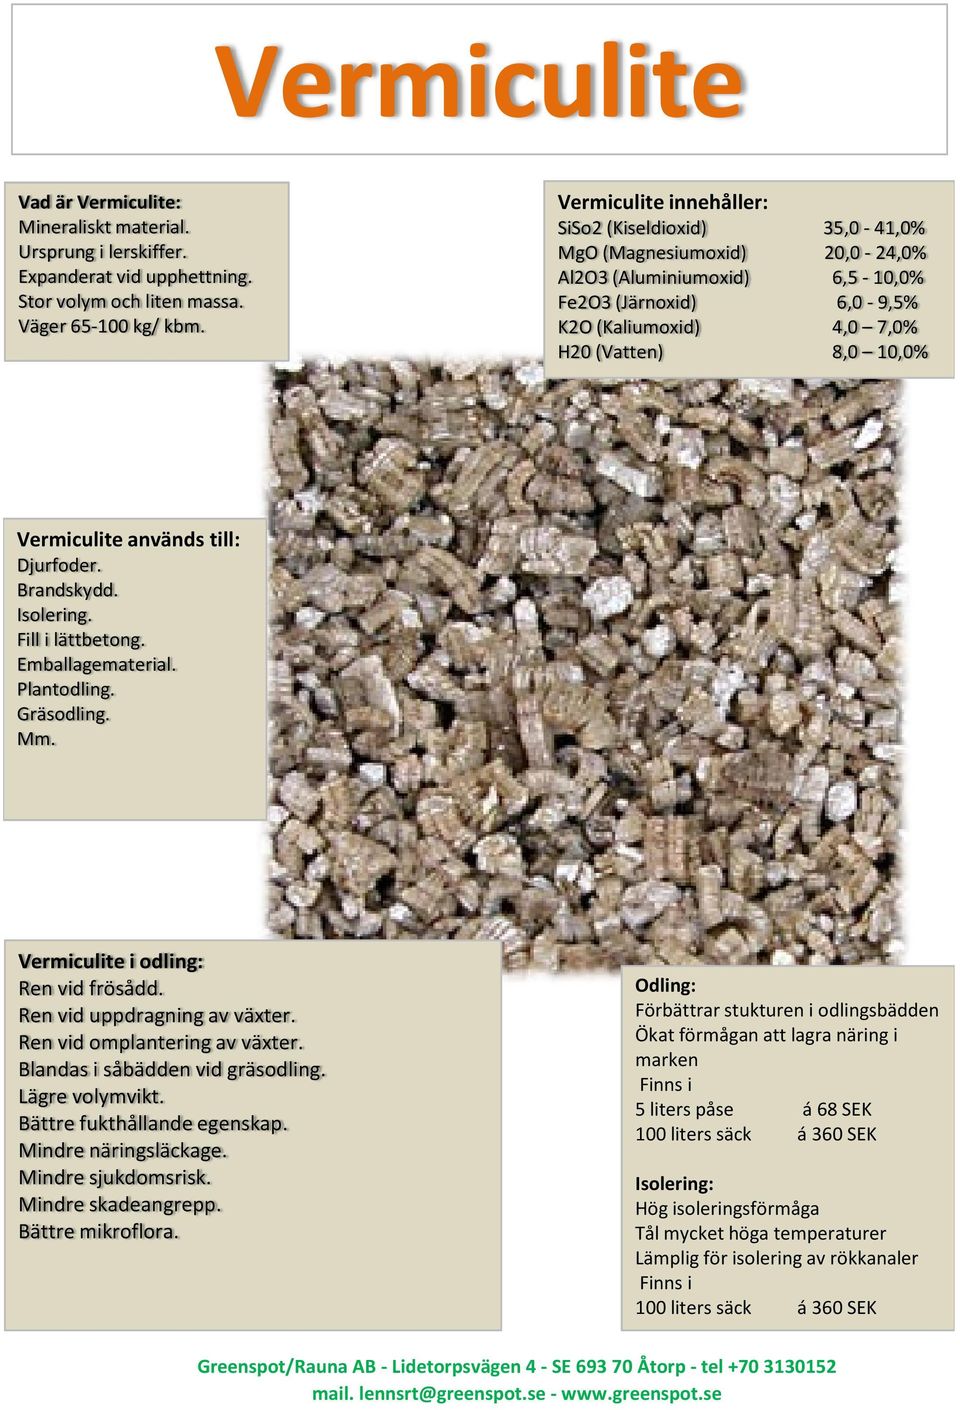 Vermiculite används till: Djurfoder. Brandskydd. Isolering. Fill i lättbetong. Emballagematerial. Plantodling. Gräsodling. Mm. Vermiculite i odling: Ren vid frösådd. Ren vid uppdragning av växter.